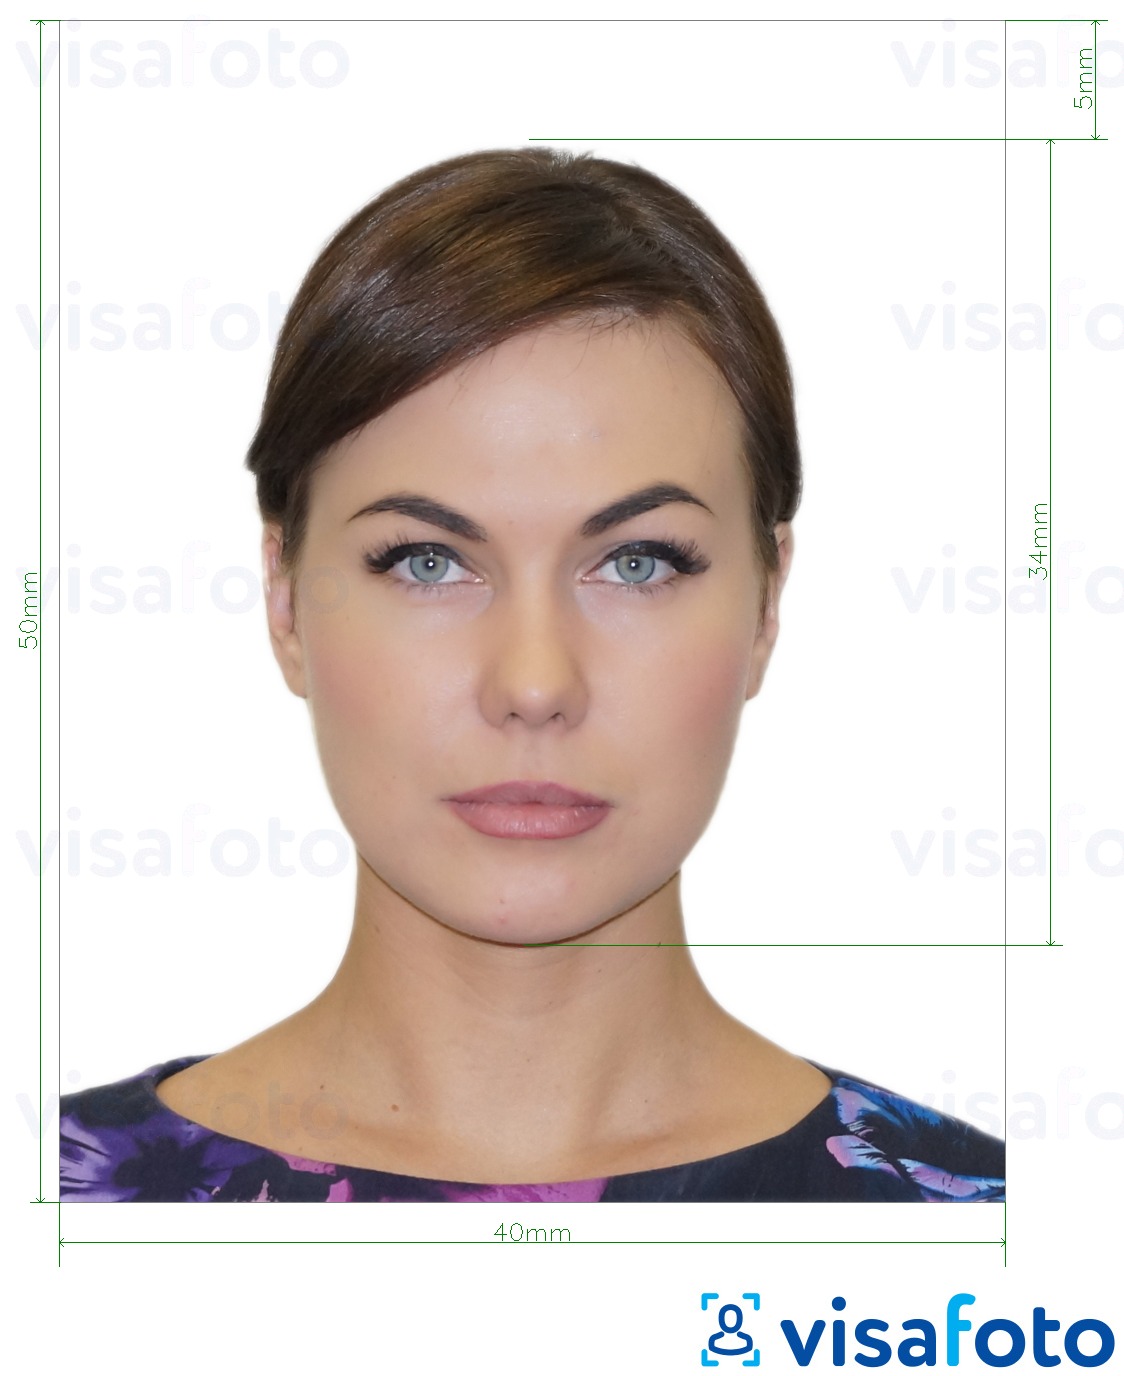 阿尔巴尼亚电子签证 4x5 厘米 的标准尺寸照片示例